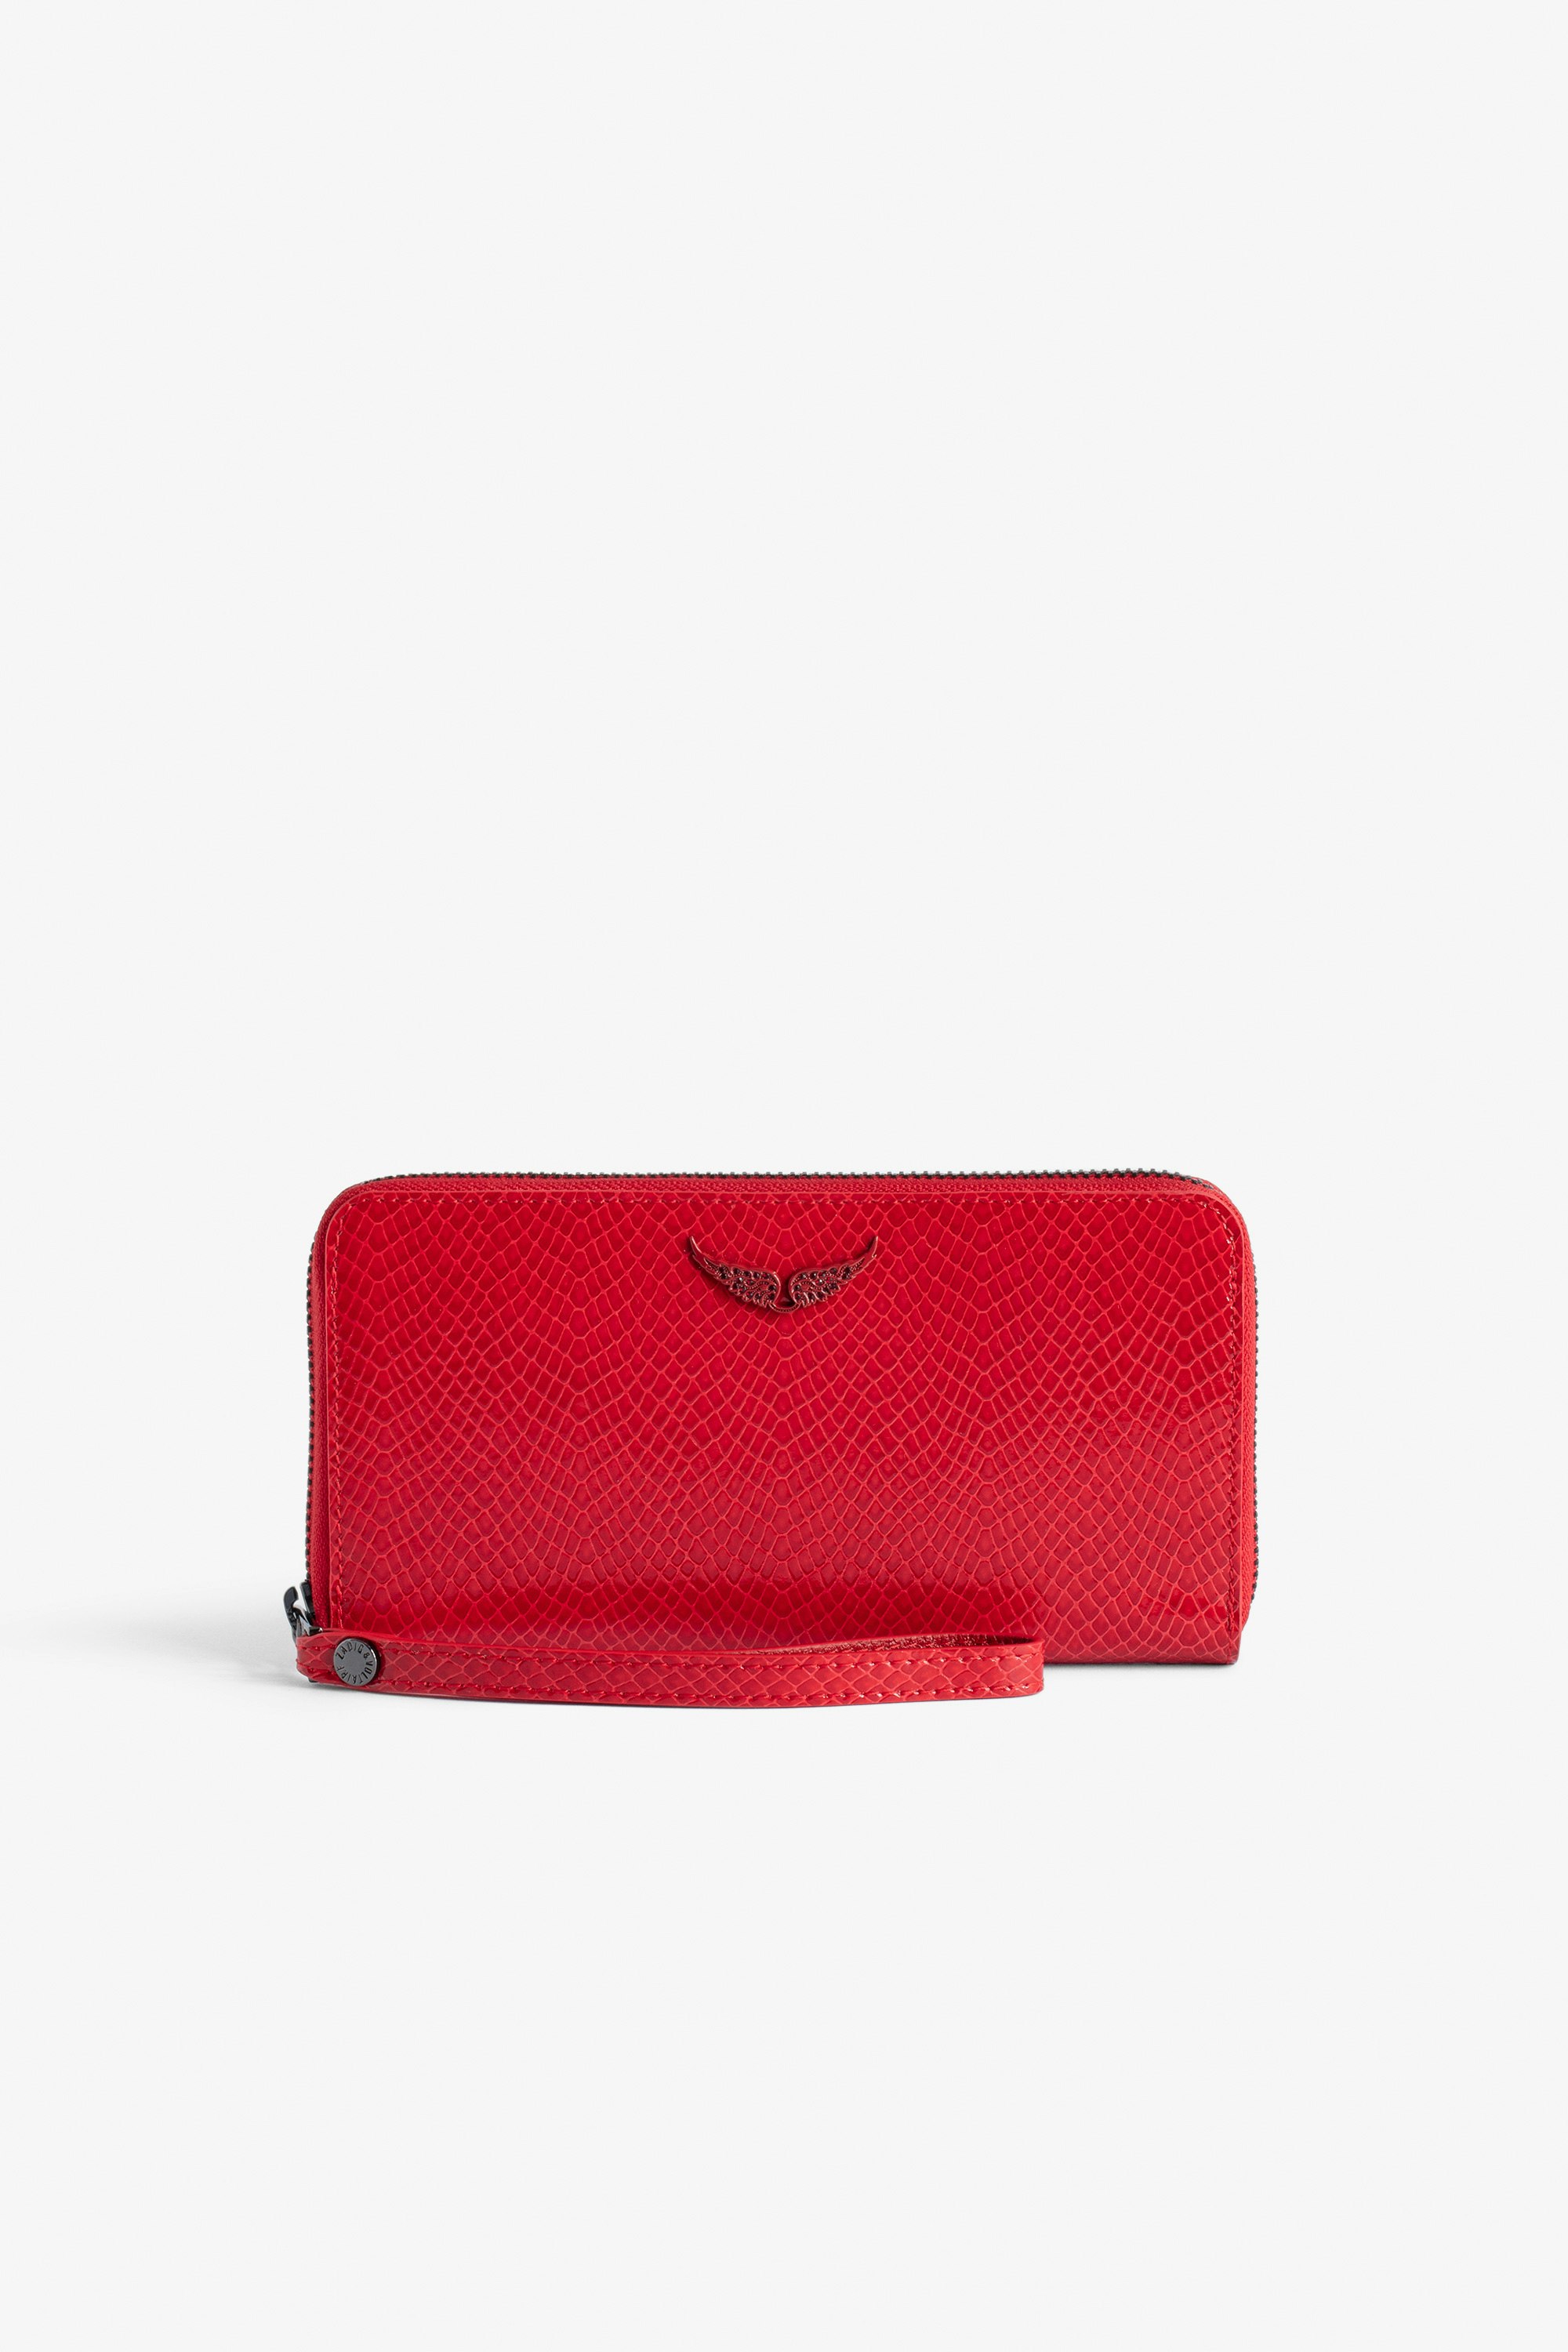 Brieftasche Compagnon Glossy Wild Geprägt - Brieftasche aus glänzendem Leder in Rot mit Phyton-Effekt und Flügel-Charm für Damen.